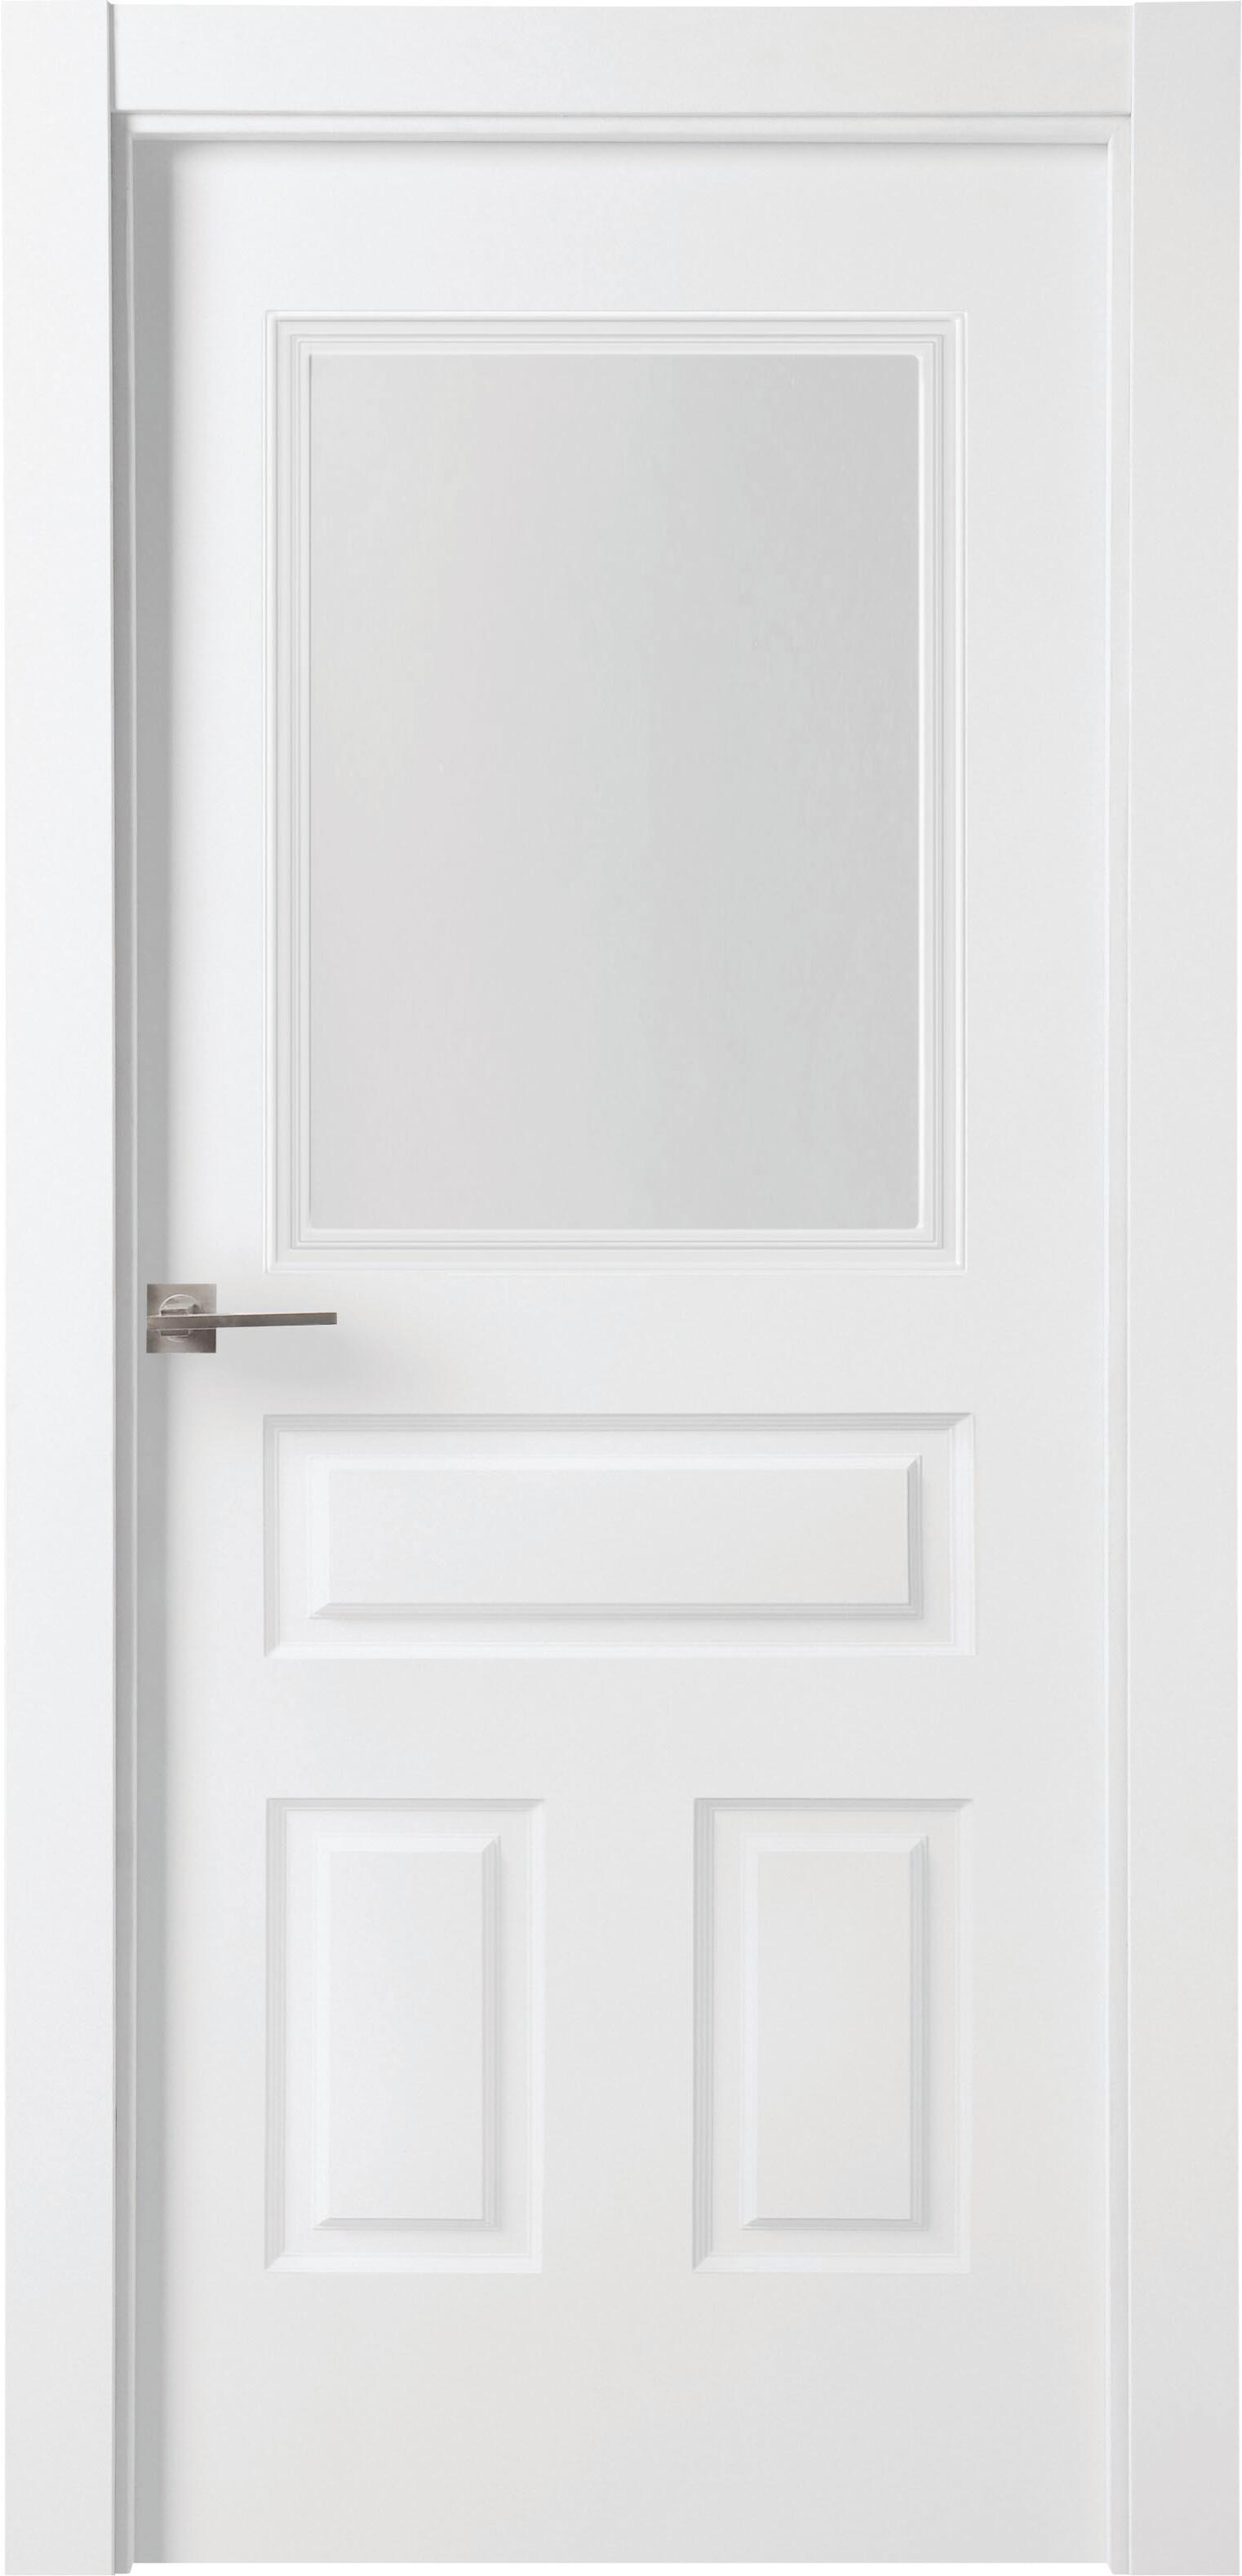 Puerta indiana plus blanco apertura derecha con cristal de 82,5cm